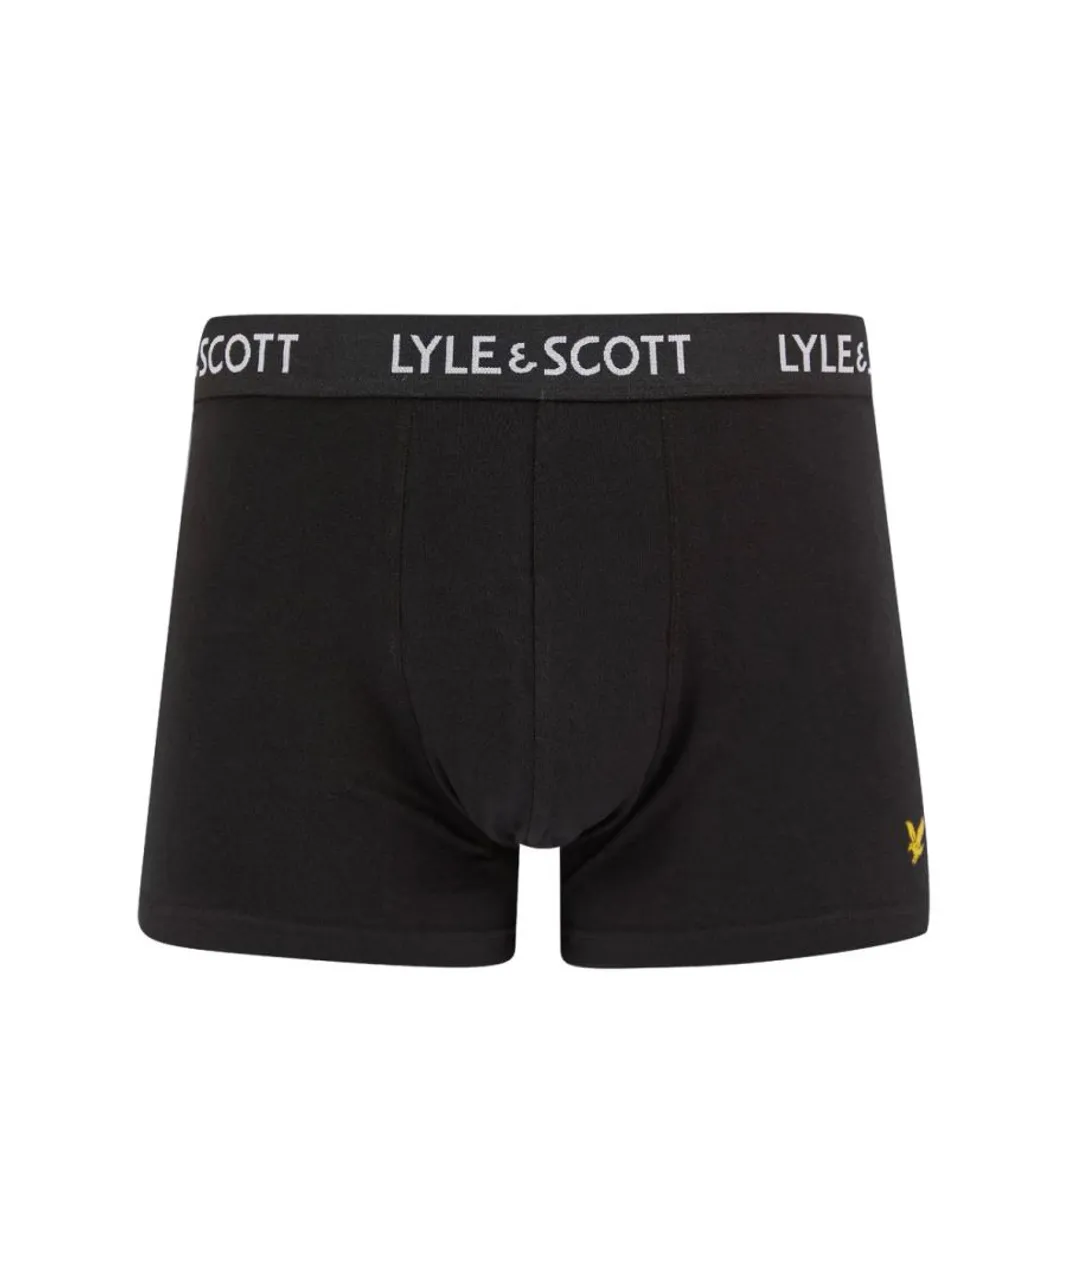 Lyle & Scott 5 Pack Mens Trunk - Black Cotton